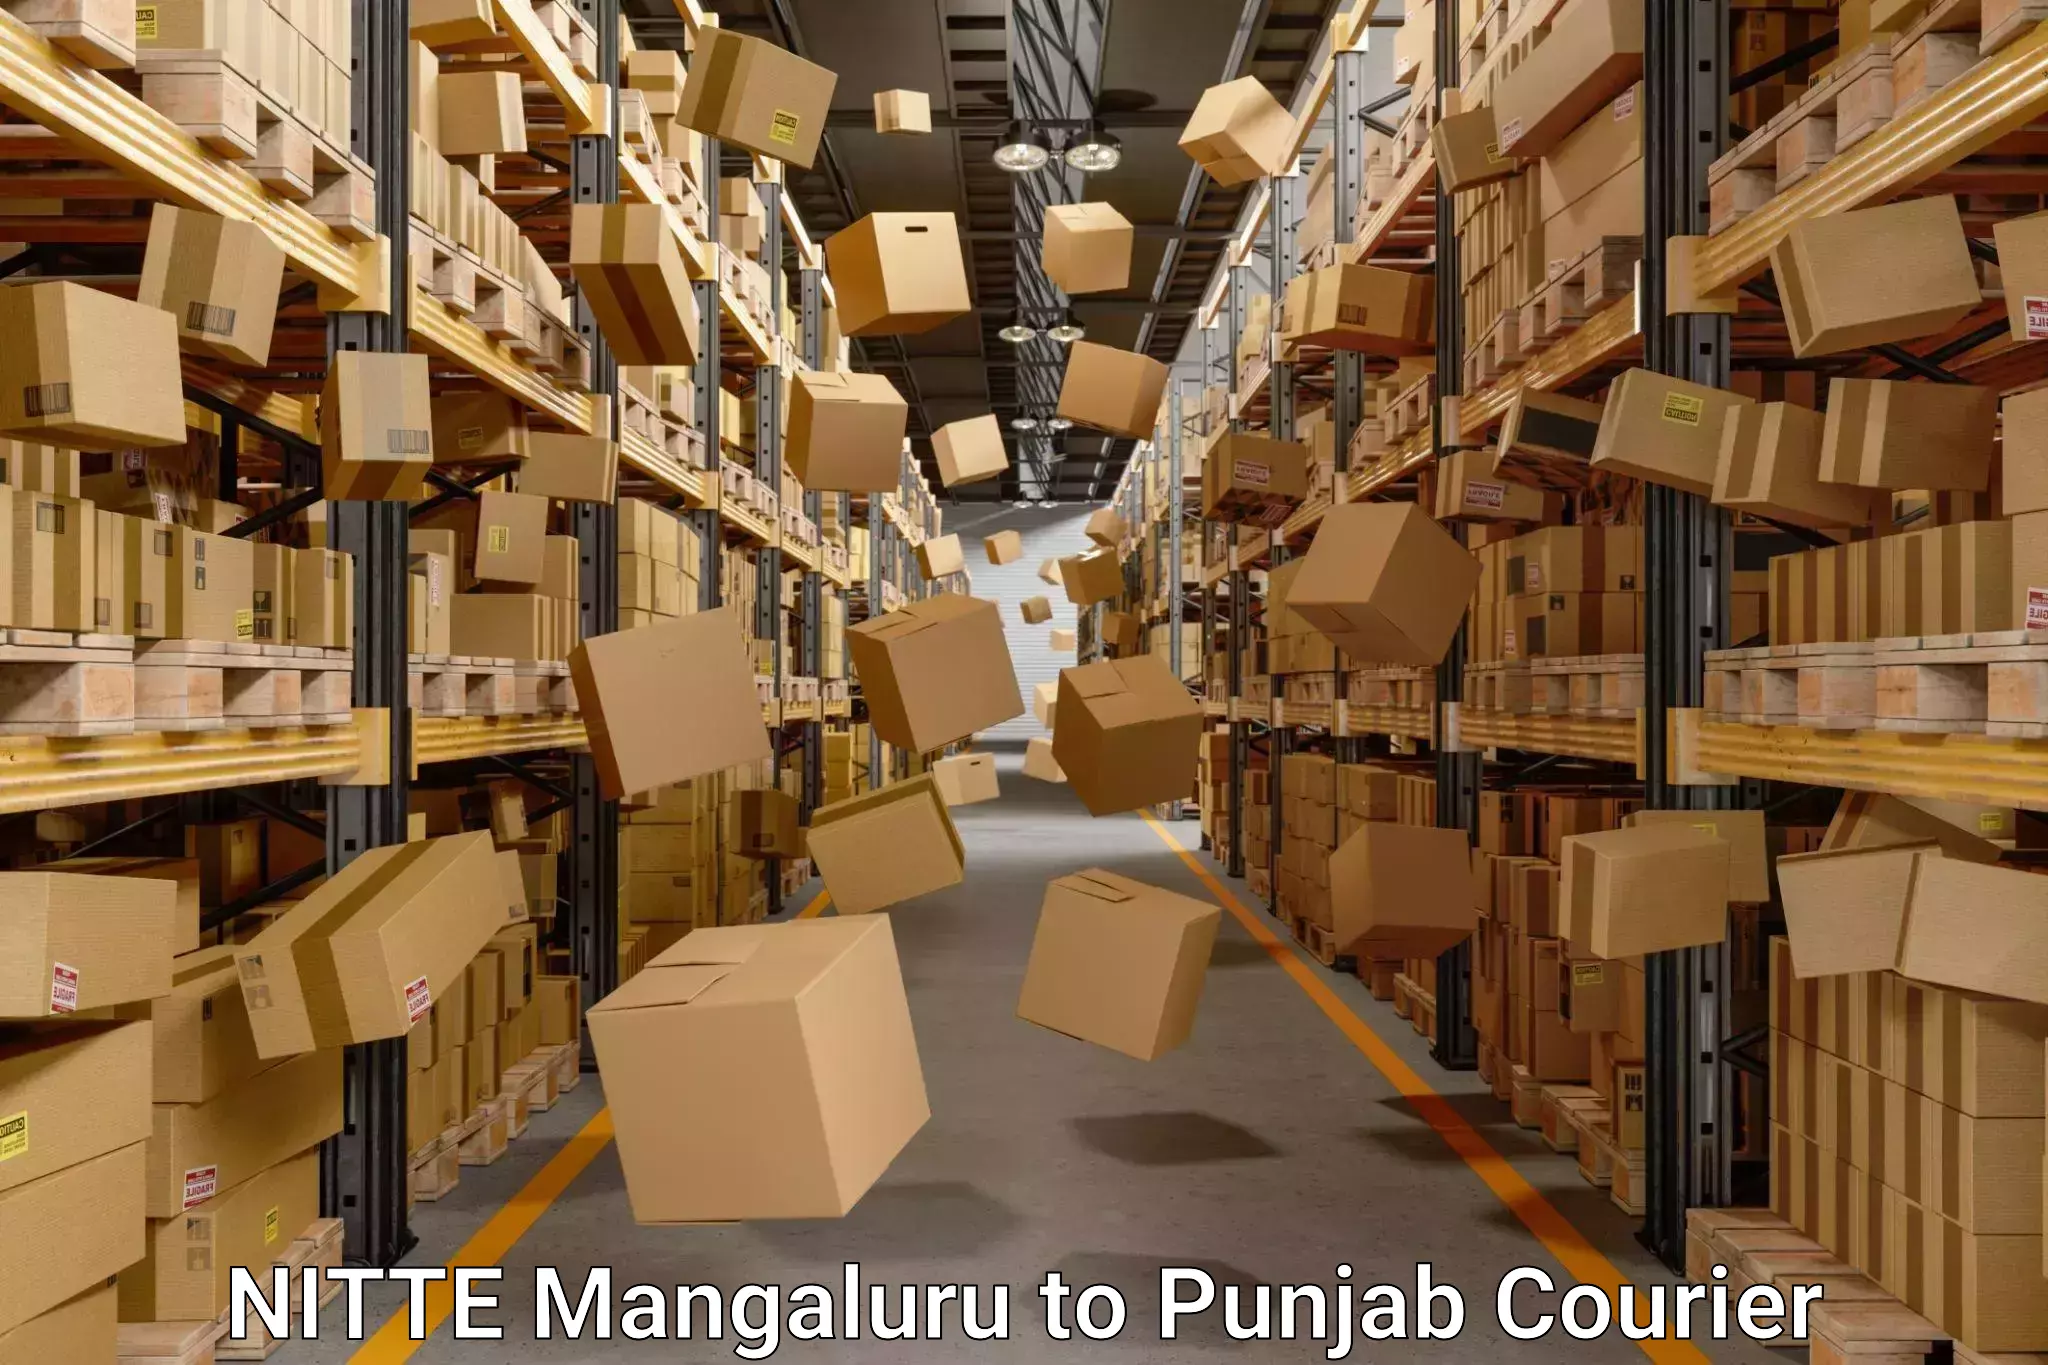 Budget-friendly movers NITTE Mangaluru to Punjab